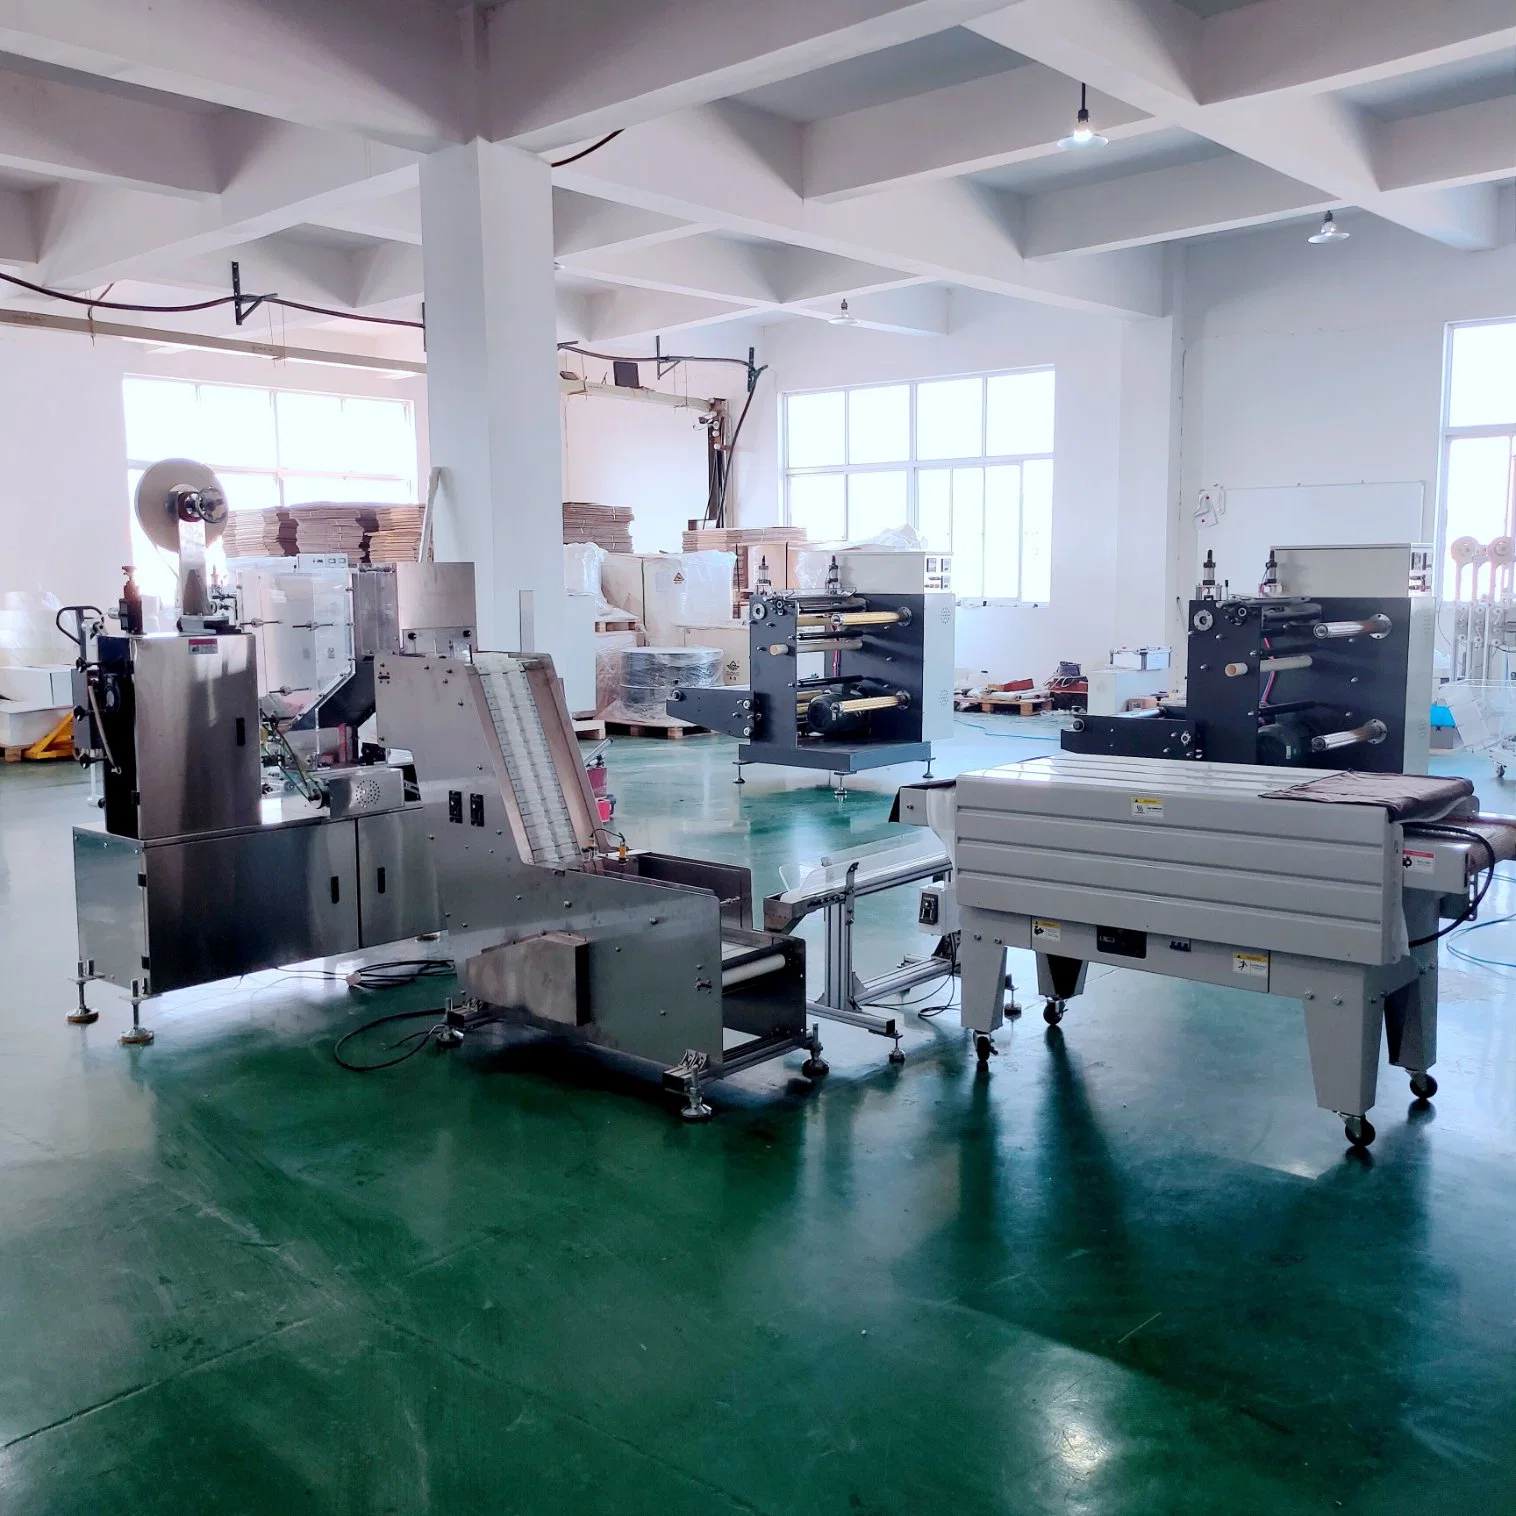 Suministro de fábrica de papel de paja máquina de fabricación de bebidas línea con Estándar CE